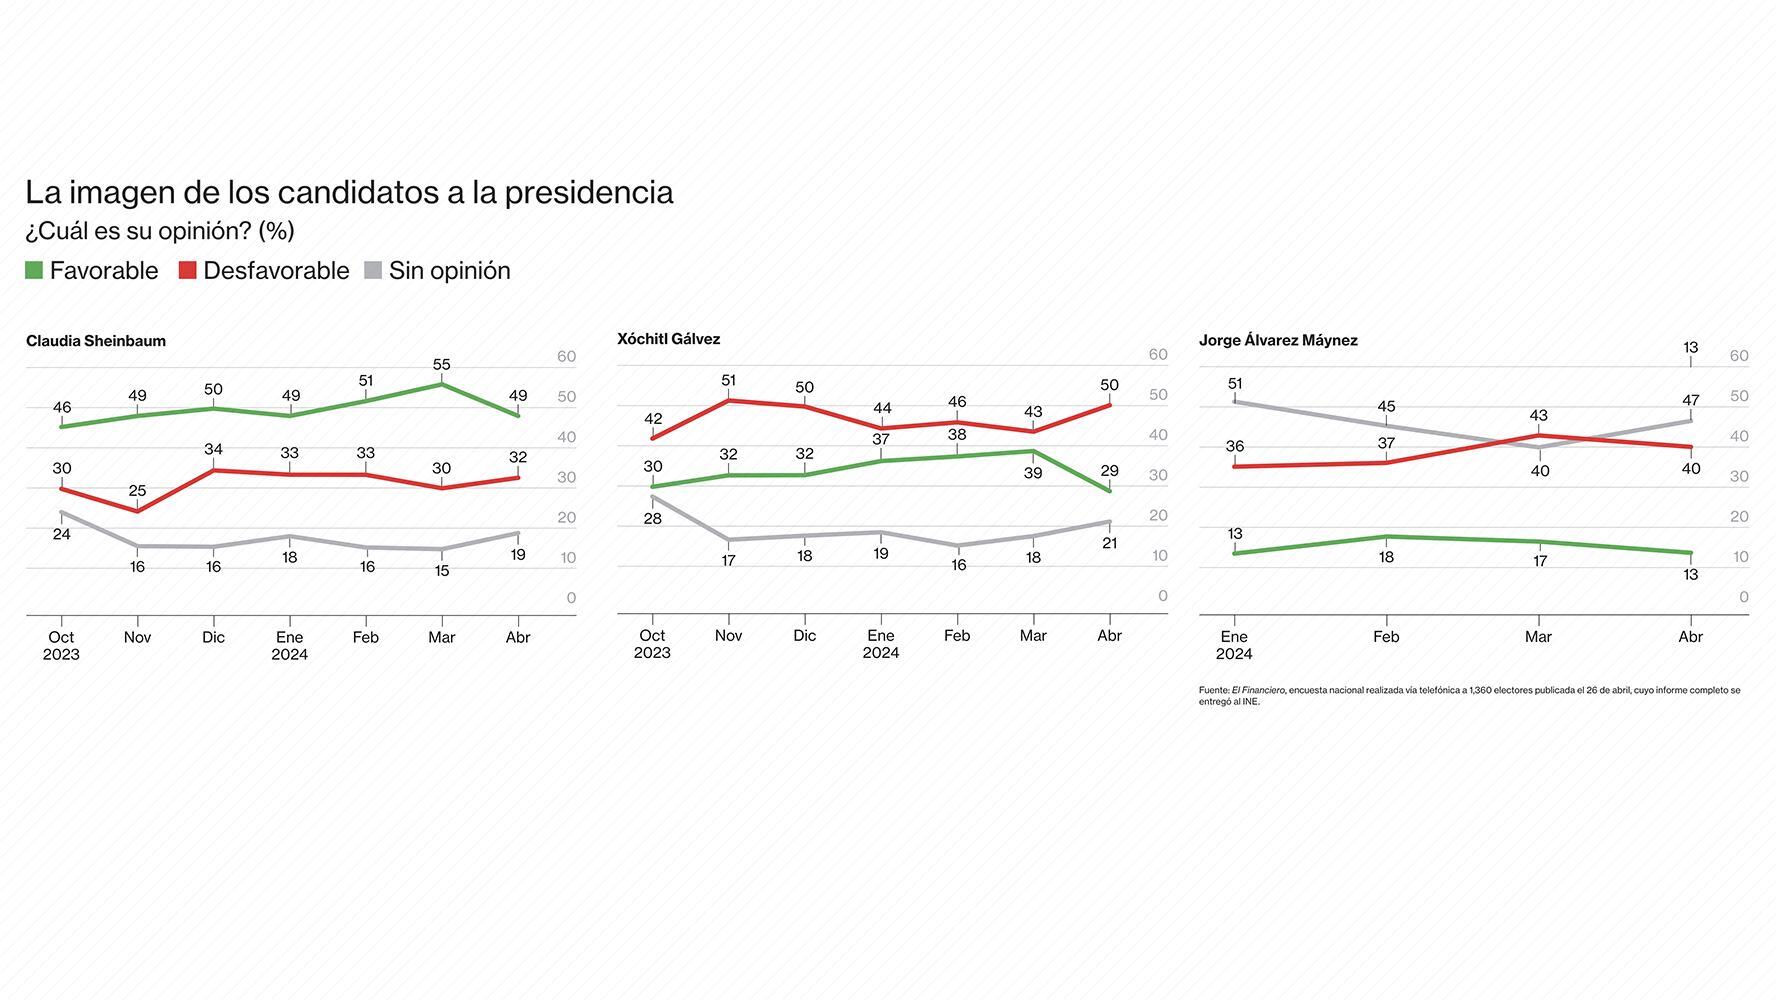 En la encuesta electoral nacional de El Financiero, publicada el 26 de abril, se muestra la opinión sobre la imagen de los candidatos.